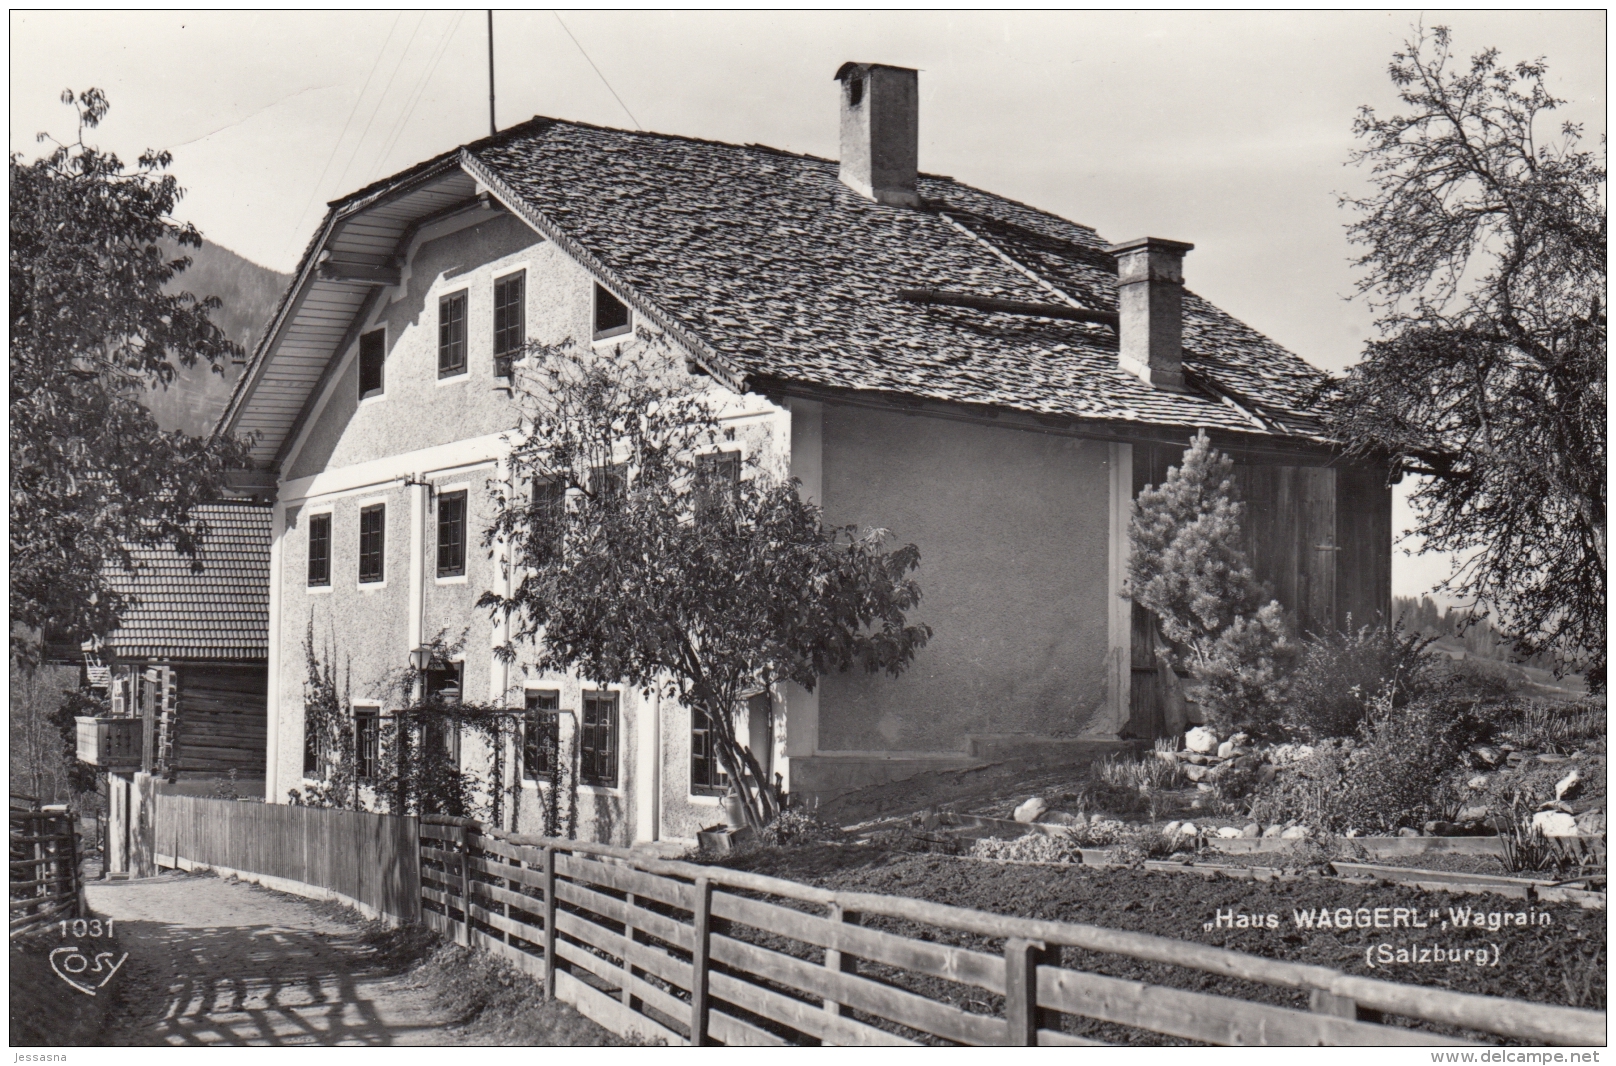 AK - Salzburg - Wagrain - Haus Waggerl - 1950 - Wagrain